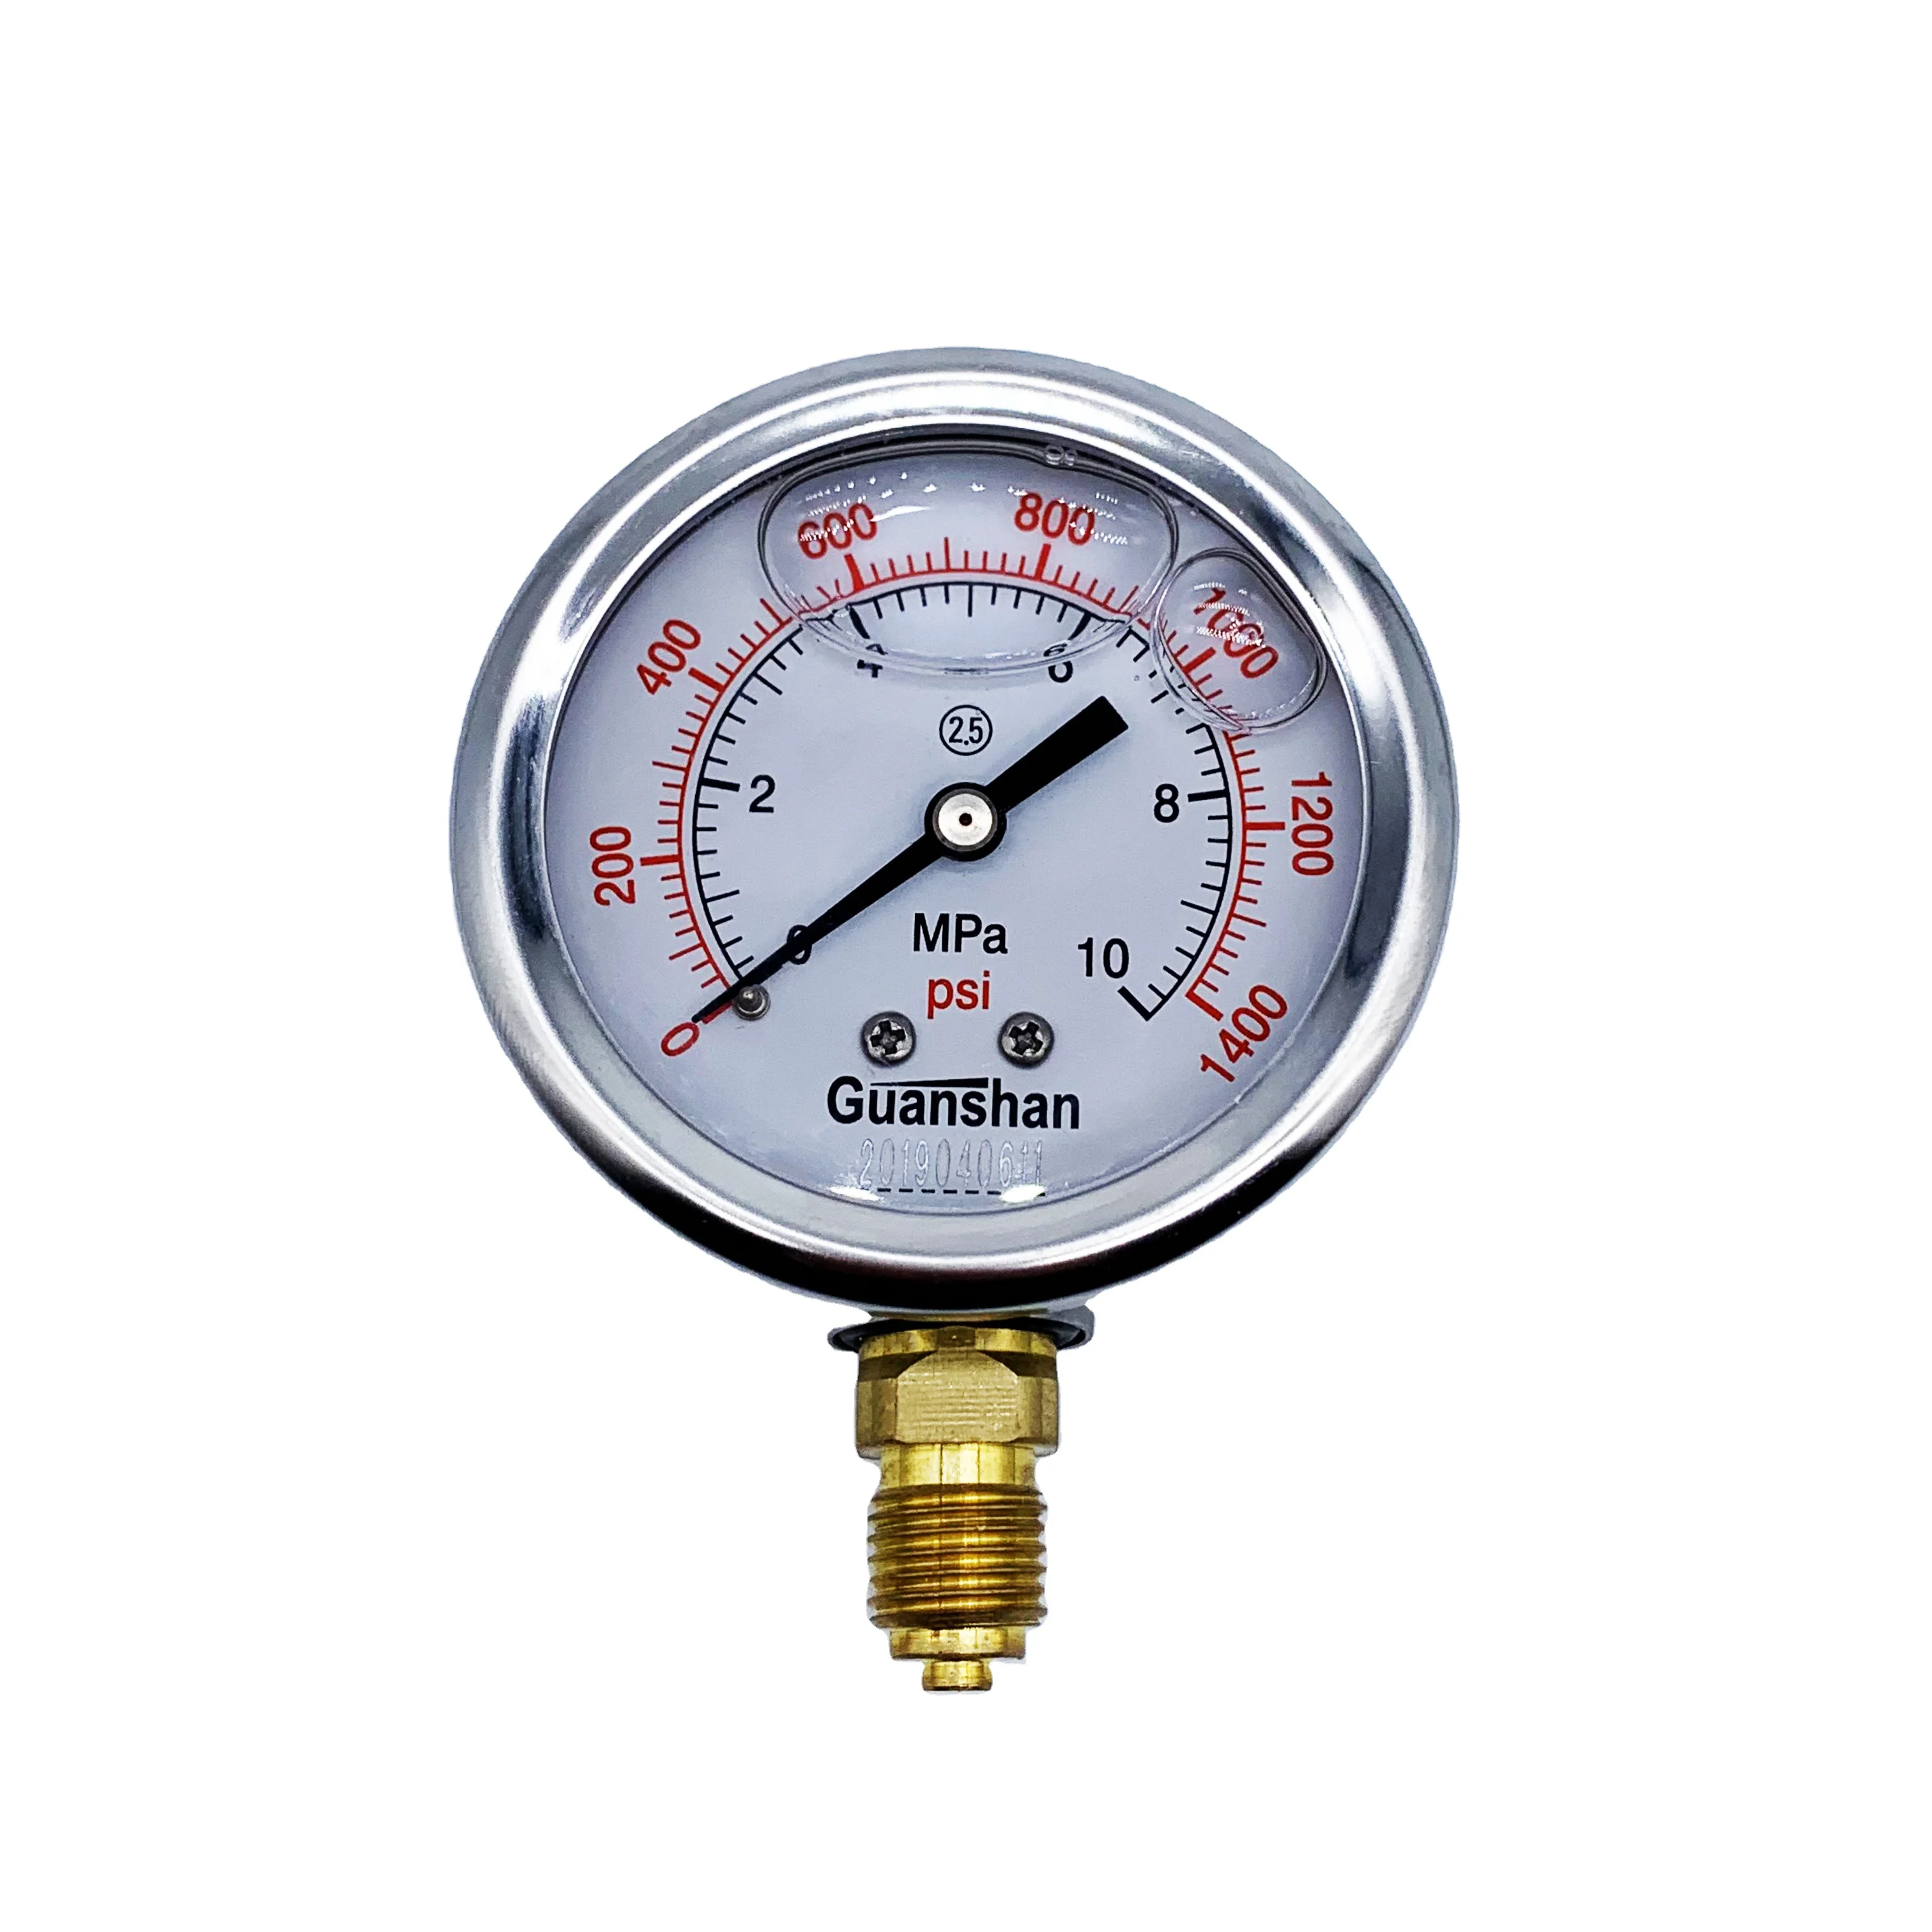 Oil Filled Pressure Gauge 1/4 BSP 0-2.5 MPA 